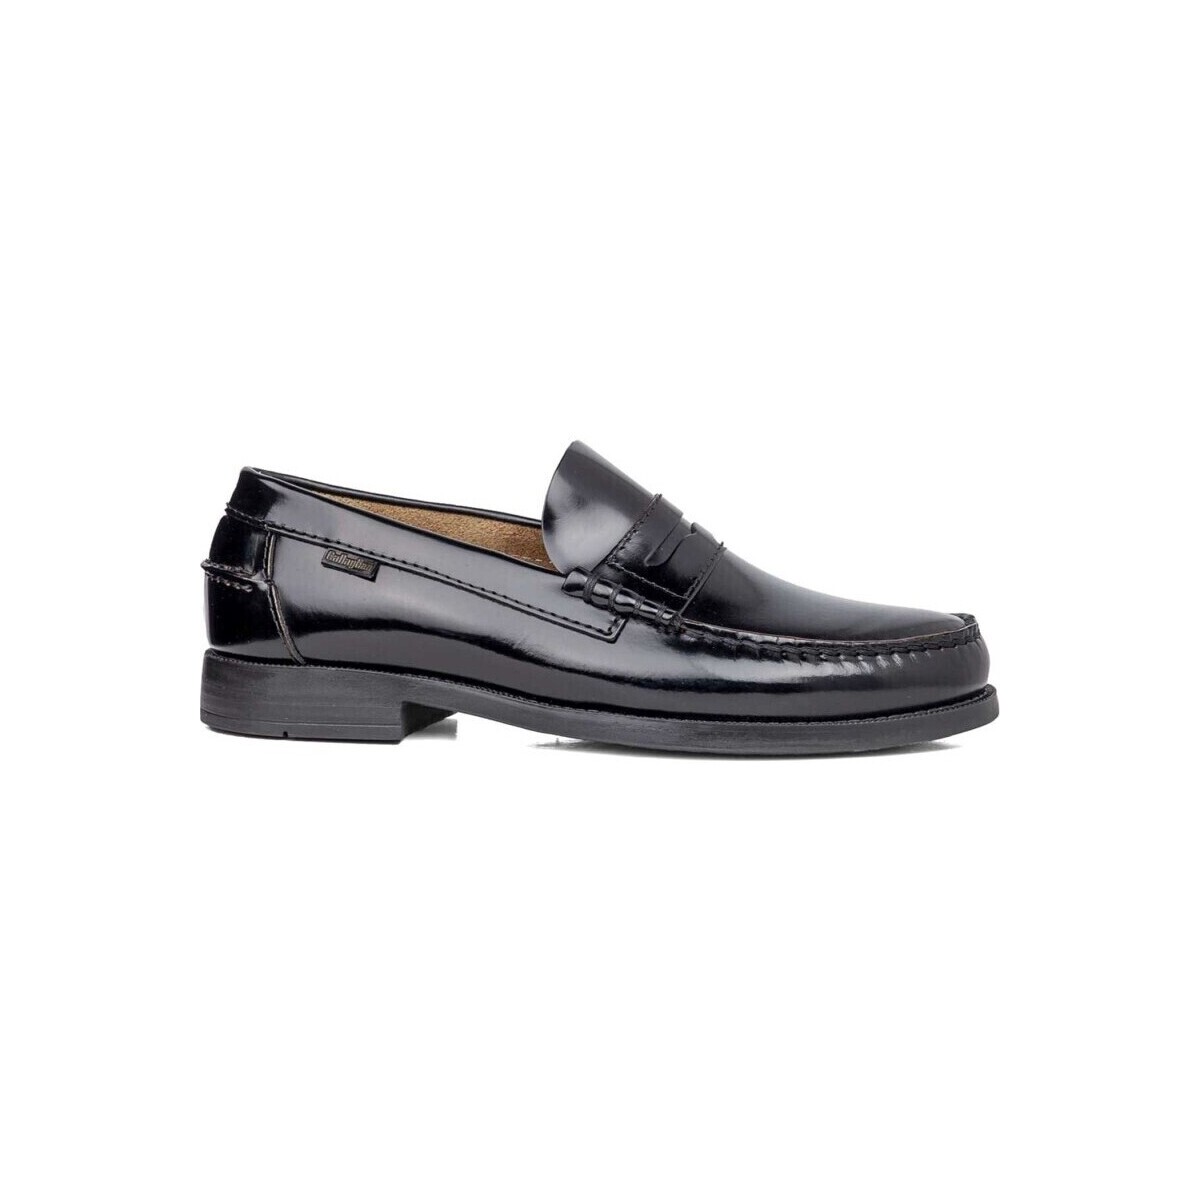 Παπούτσια Άνδρας Μοκασσίνια CallagHan 24571-28 Black